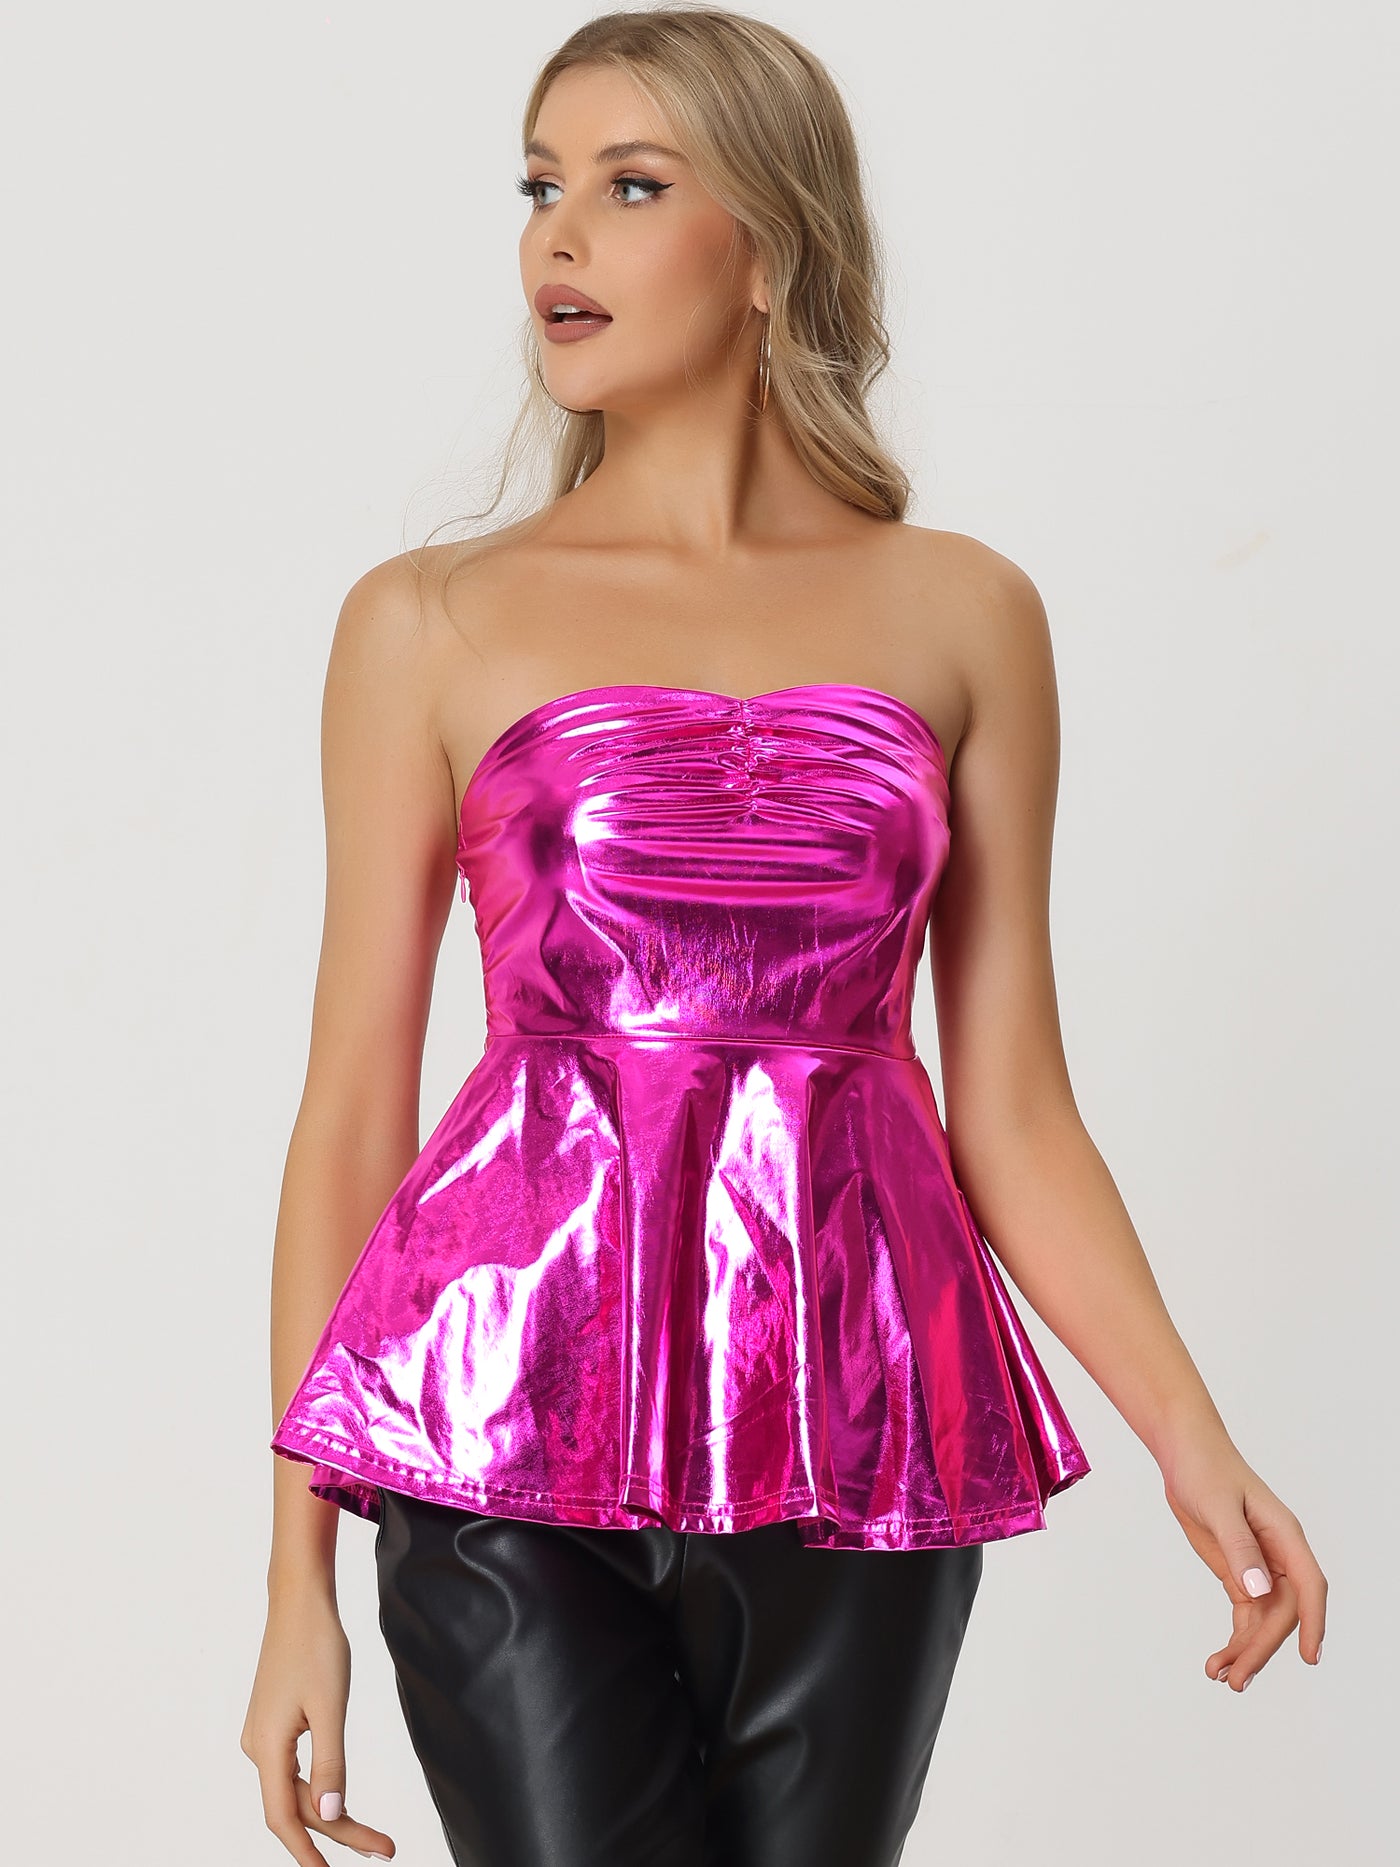 Allegra K Strapless Tube Top Shiny Metallic Party Clubwear Peplum Blouse